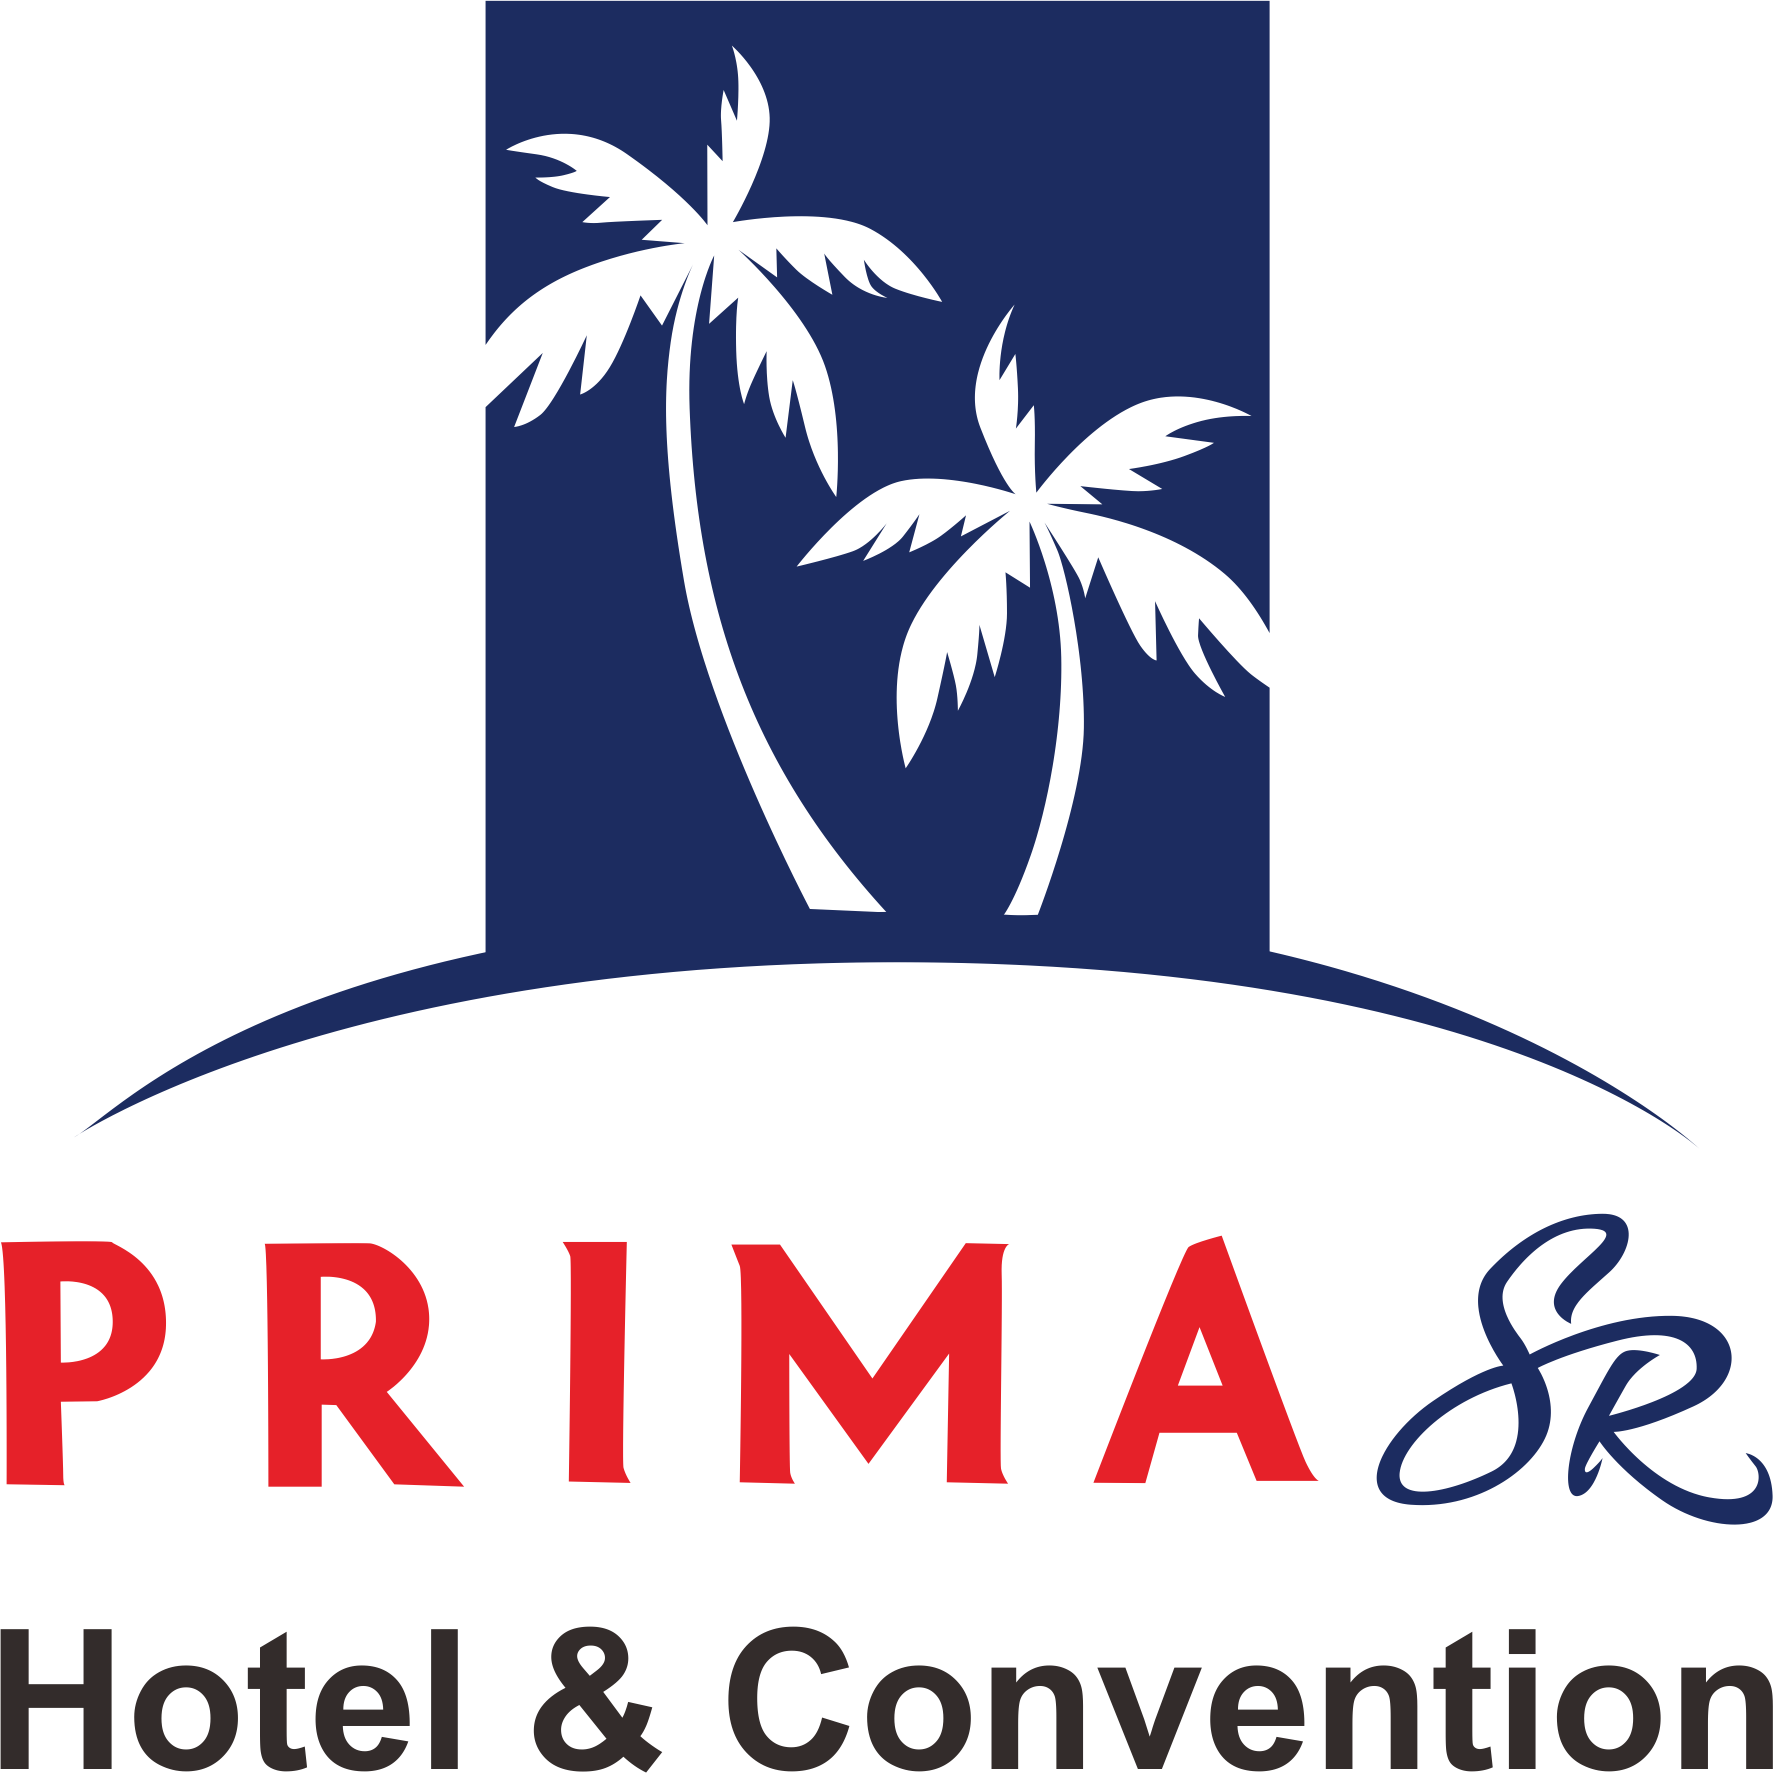 Prima SR Hotel & convention